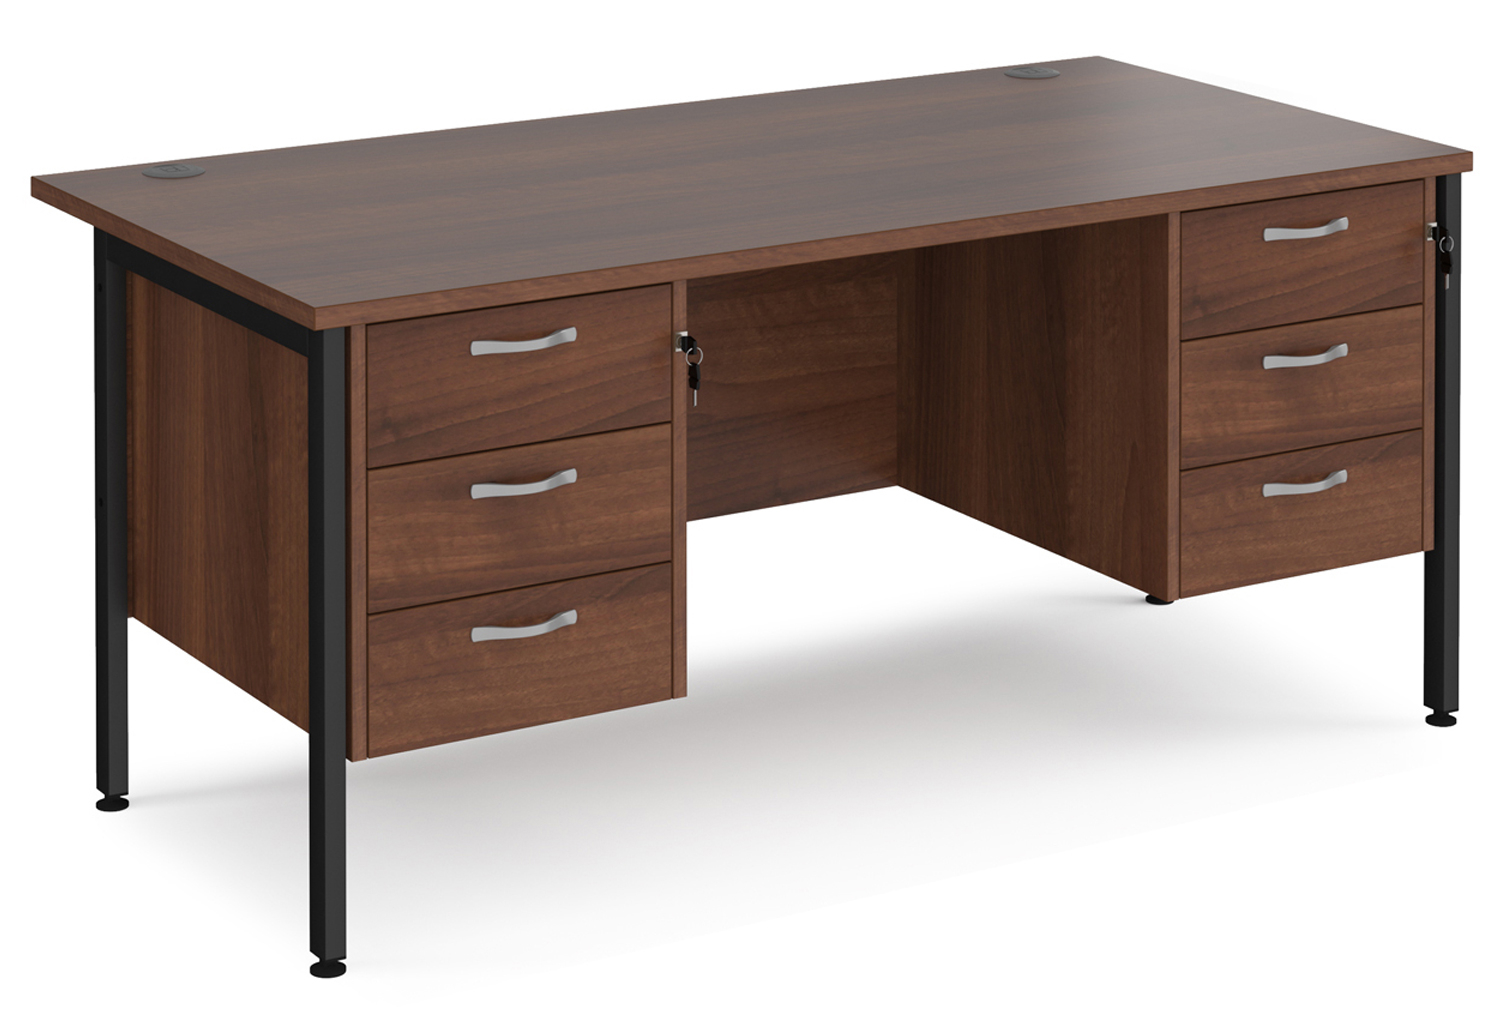 Value Line Deluxe H-Leg Rectangular Office Desk 3+3 Drawers (Black Legs), 160wx80dx73h (cm), Walnut